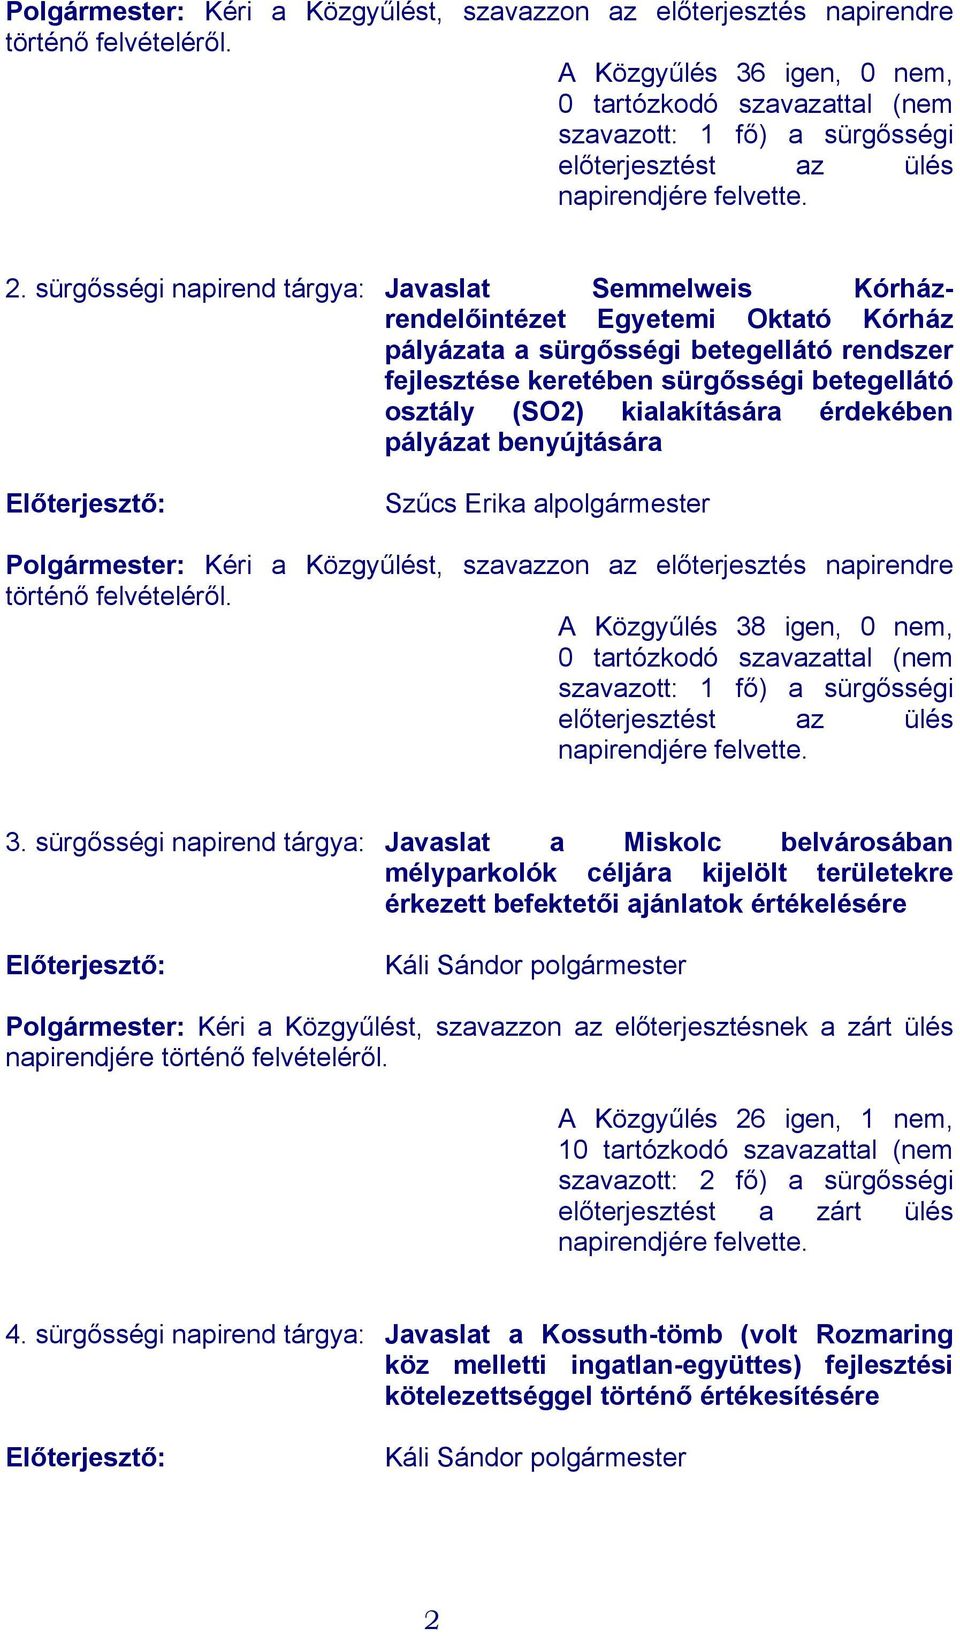 sürgősségi napirend tárgya: Javaslat Semmelweis Kórházrendelőintézet Egyetemi Oktató Kórház pályázata a sürgősségi betegellátó rendszer fejlesztése keretében sürgősségi betegellátó osztály (SO2)